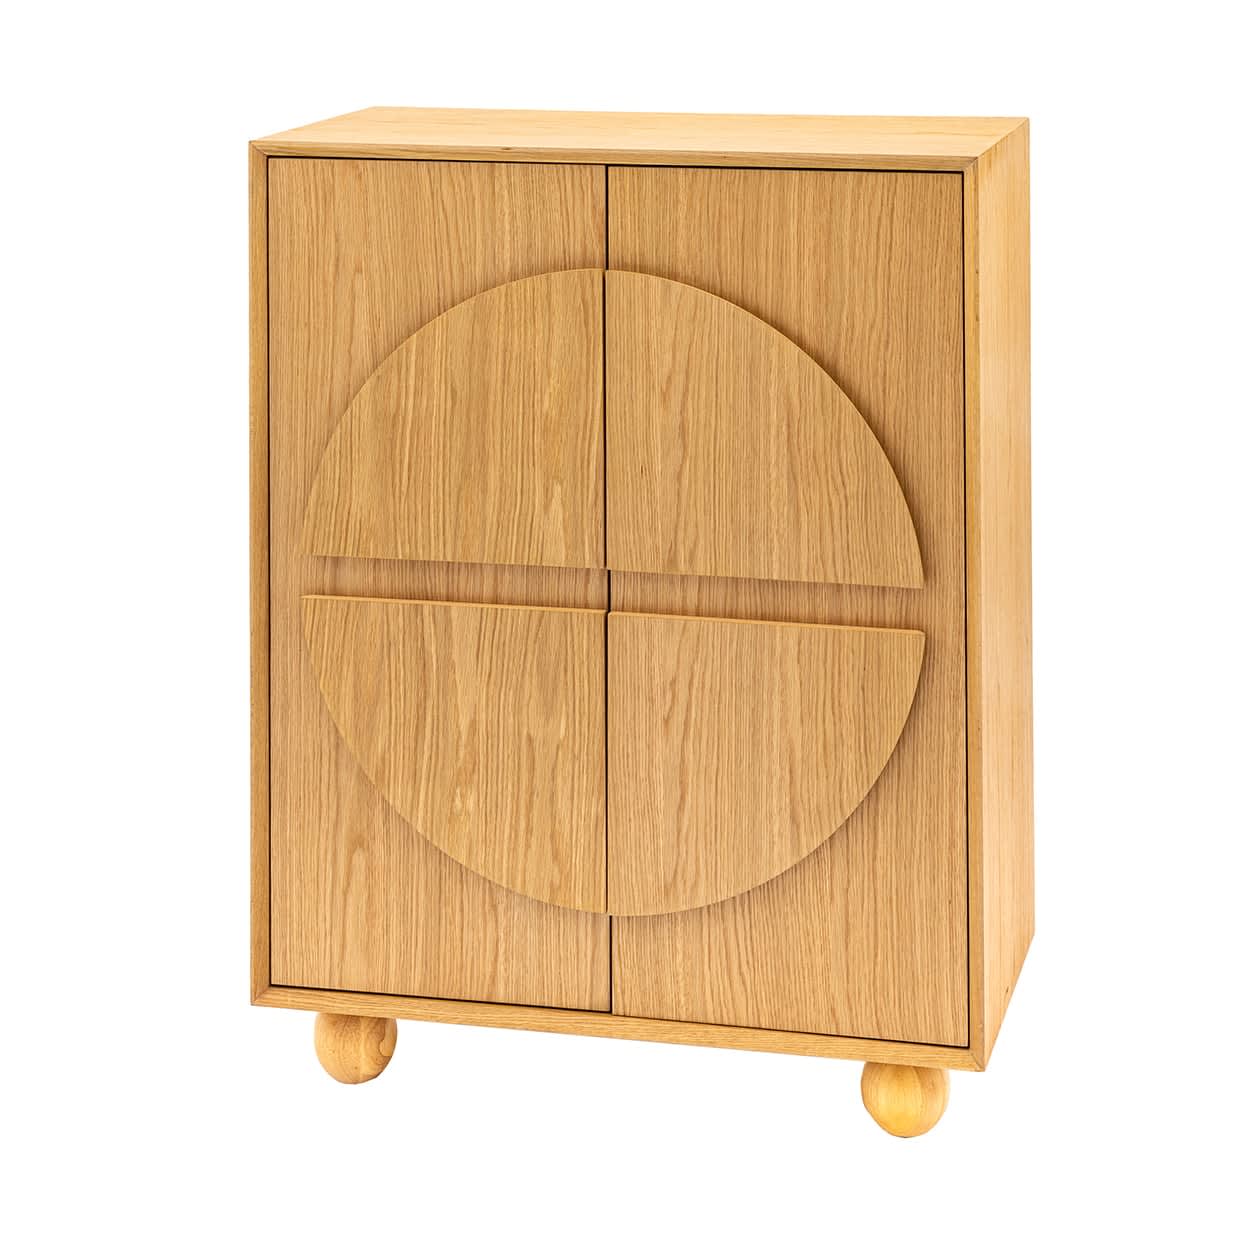 Geo Wooden 2 Door Cupboard by Gallery Direct